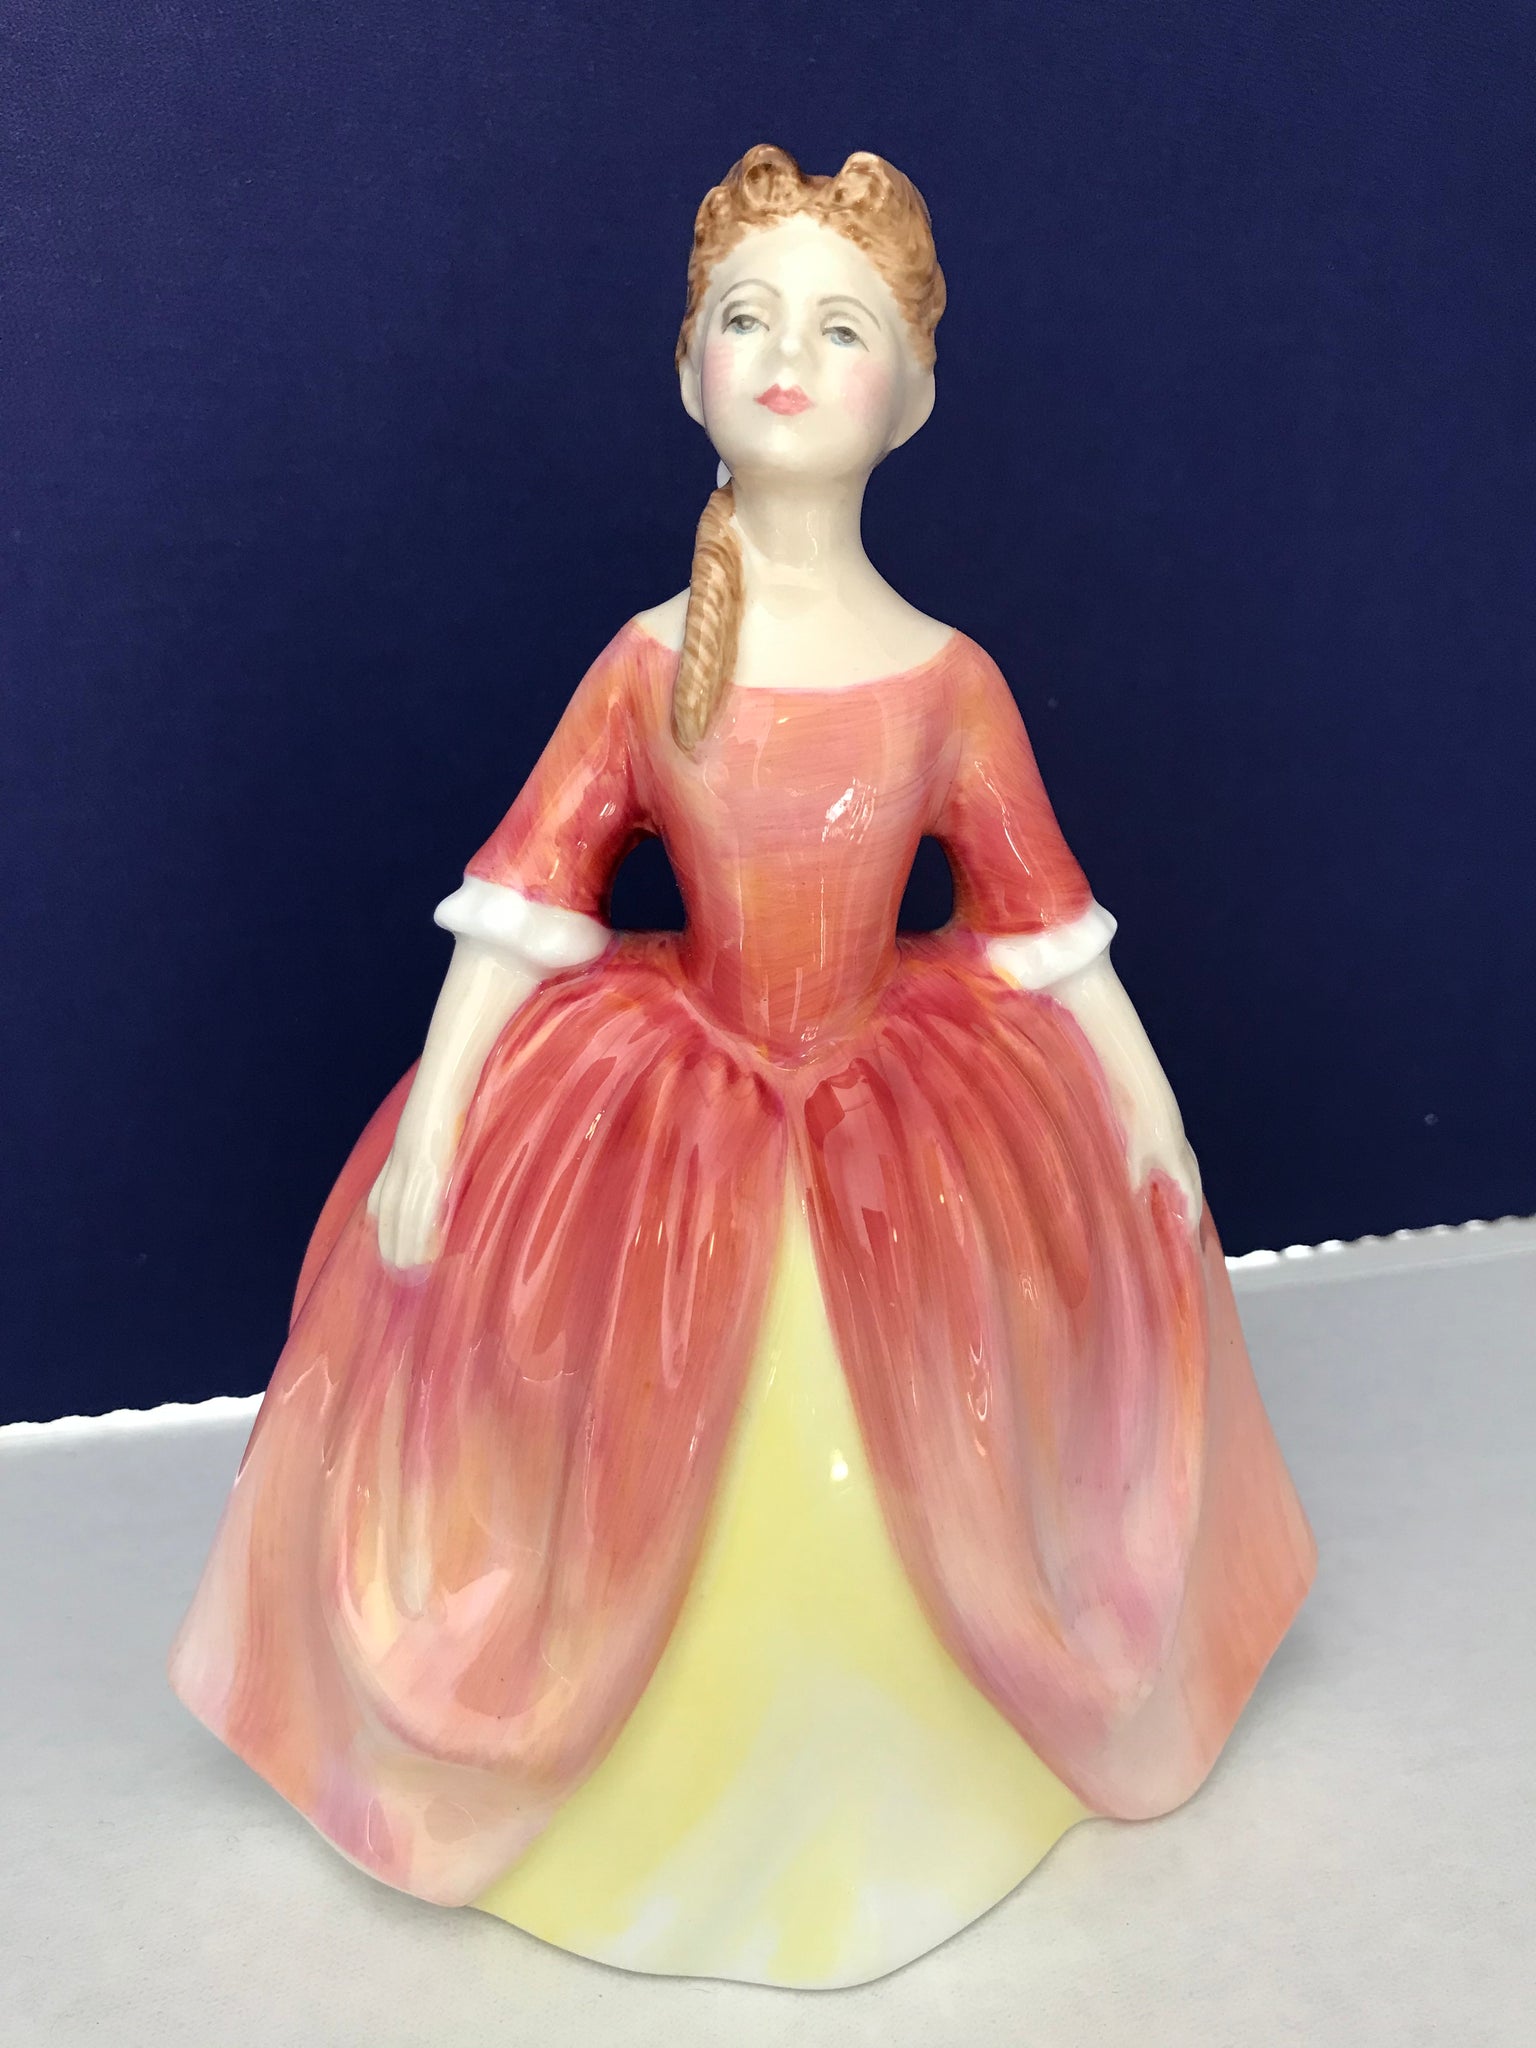 Royal Doulton "Debbie" Porcelain figurine